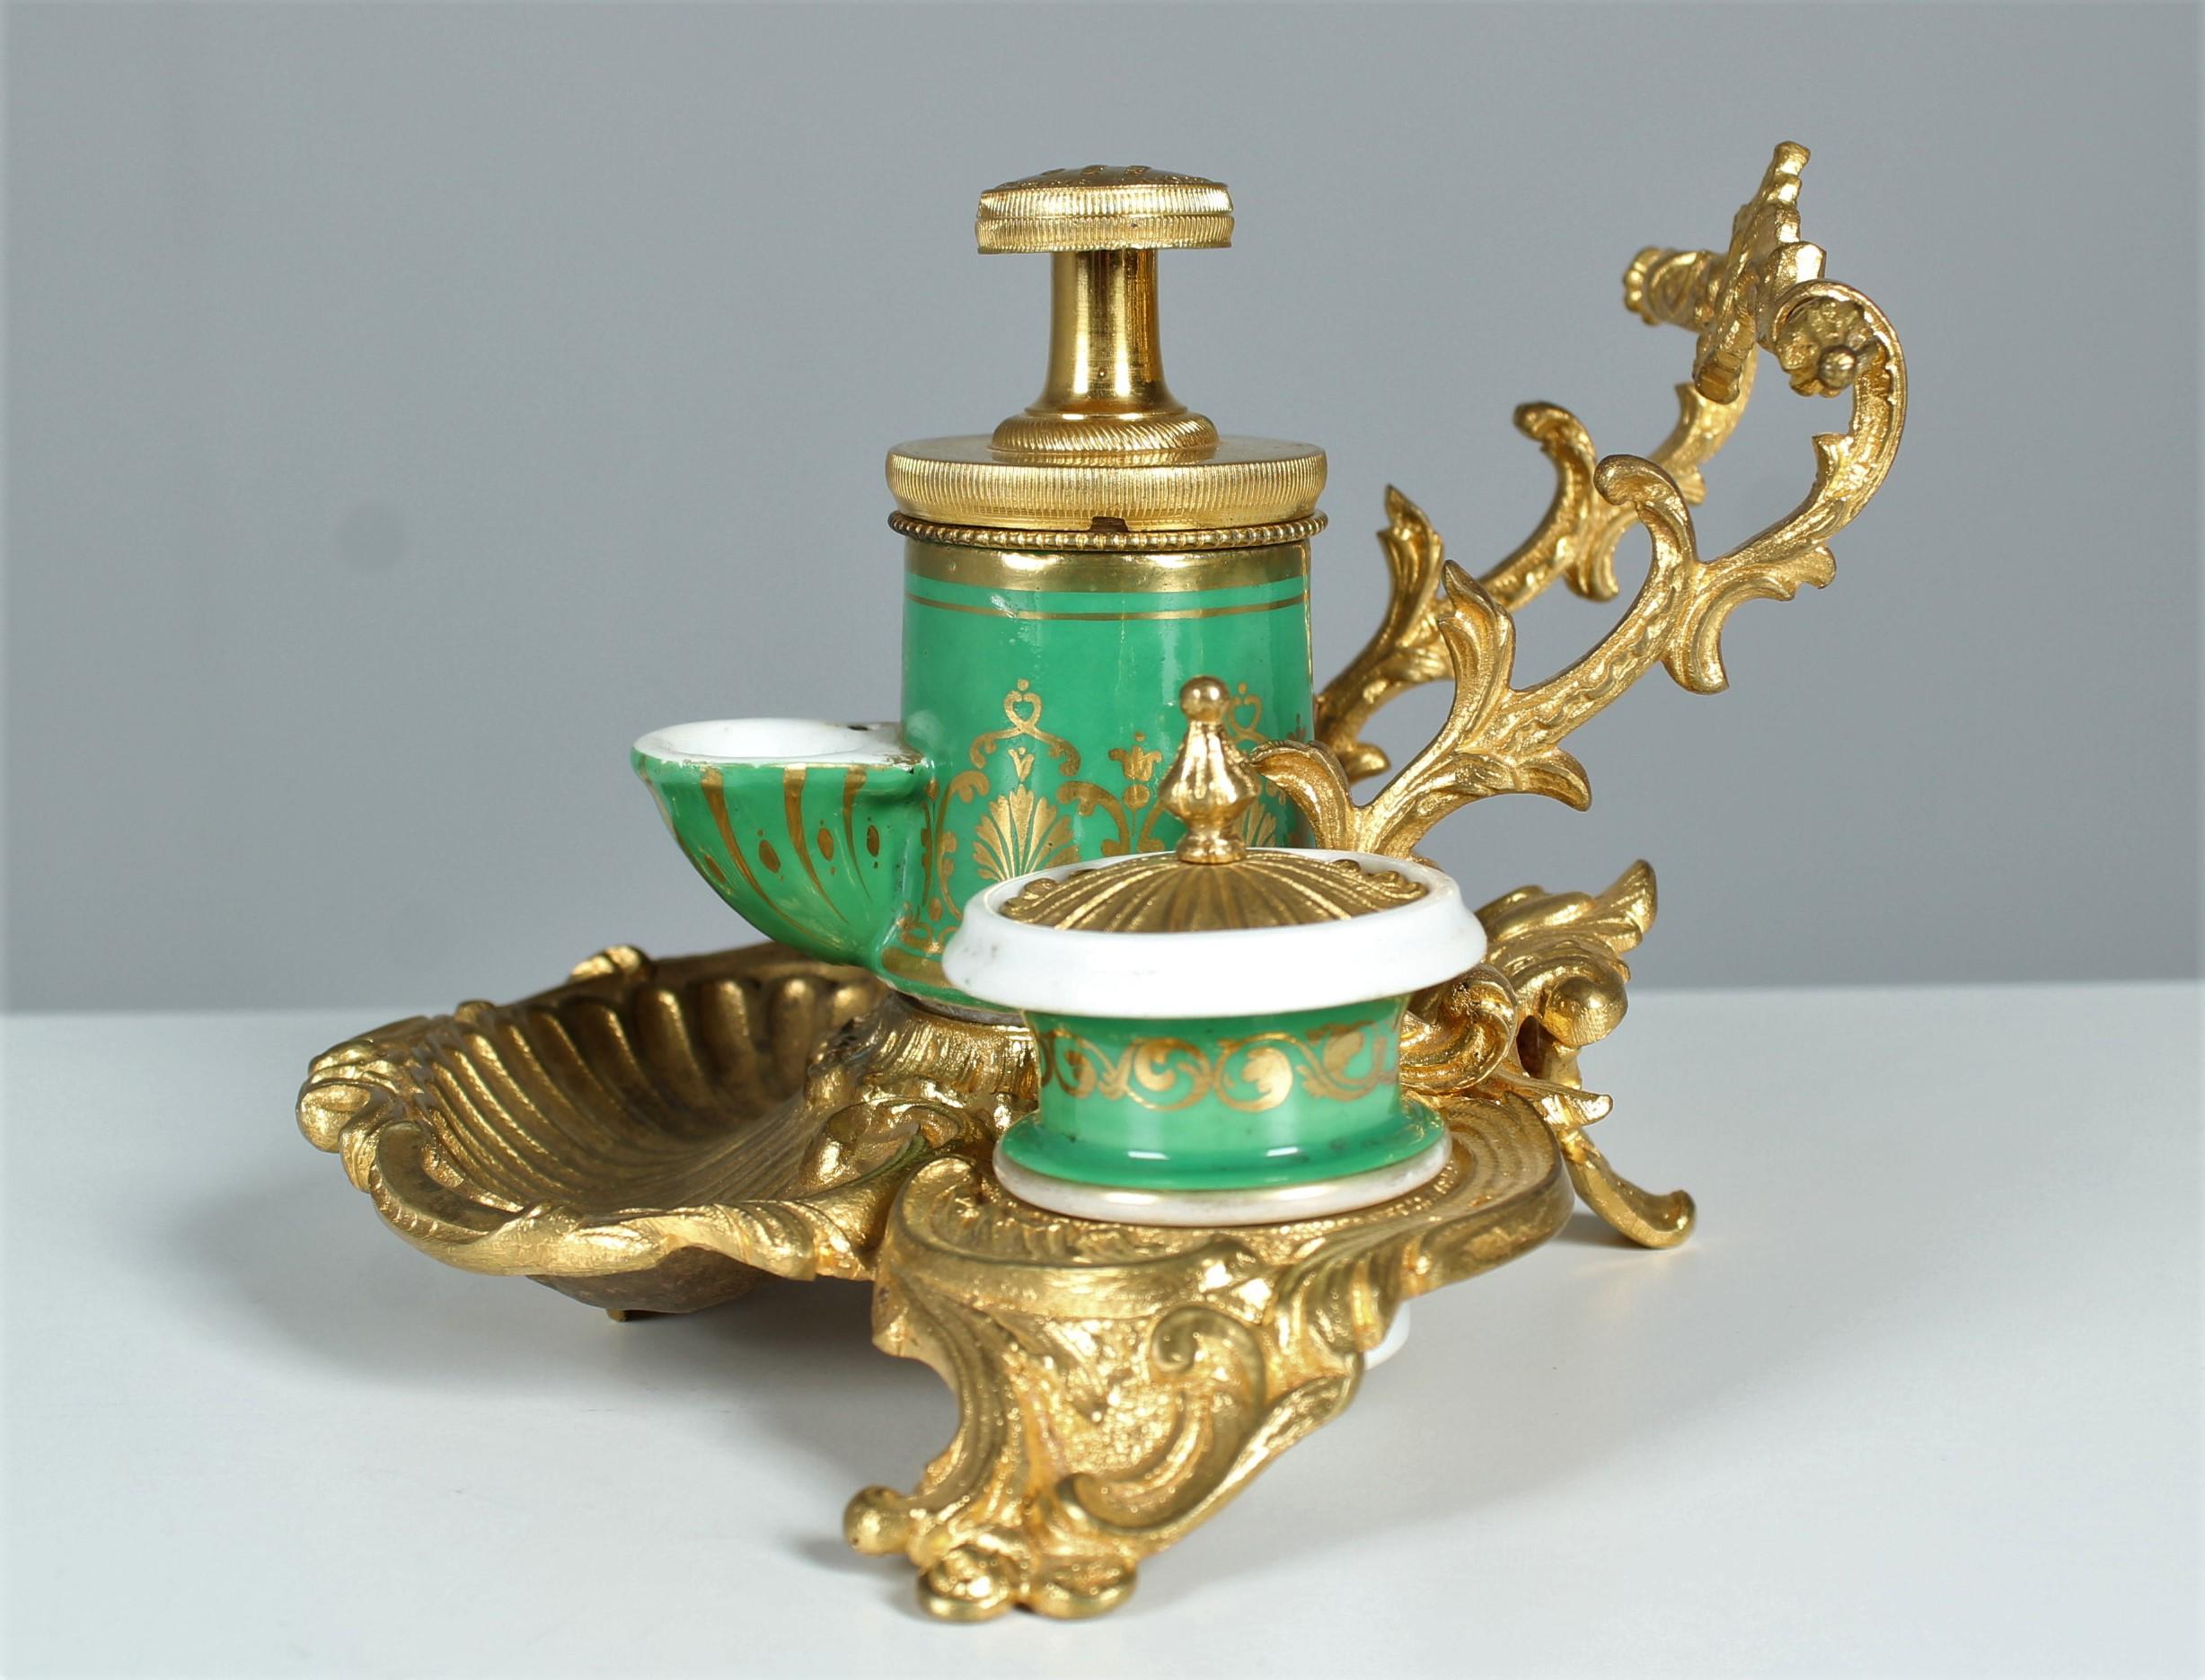 Exceptionnel encrier ancien avec de riches ornements en bronze et trois récipients en céramique.
Les pots d'encre sont peints dans un beau vert riche et rehaussés d'or.
France, vers 1880.




